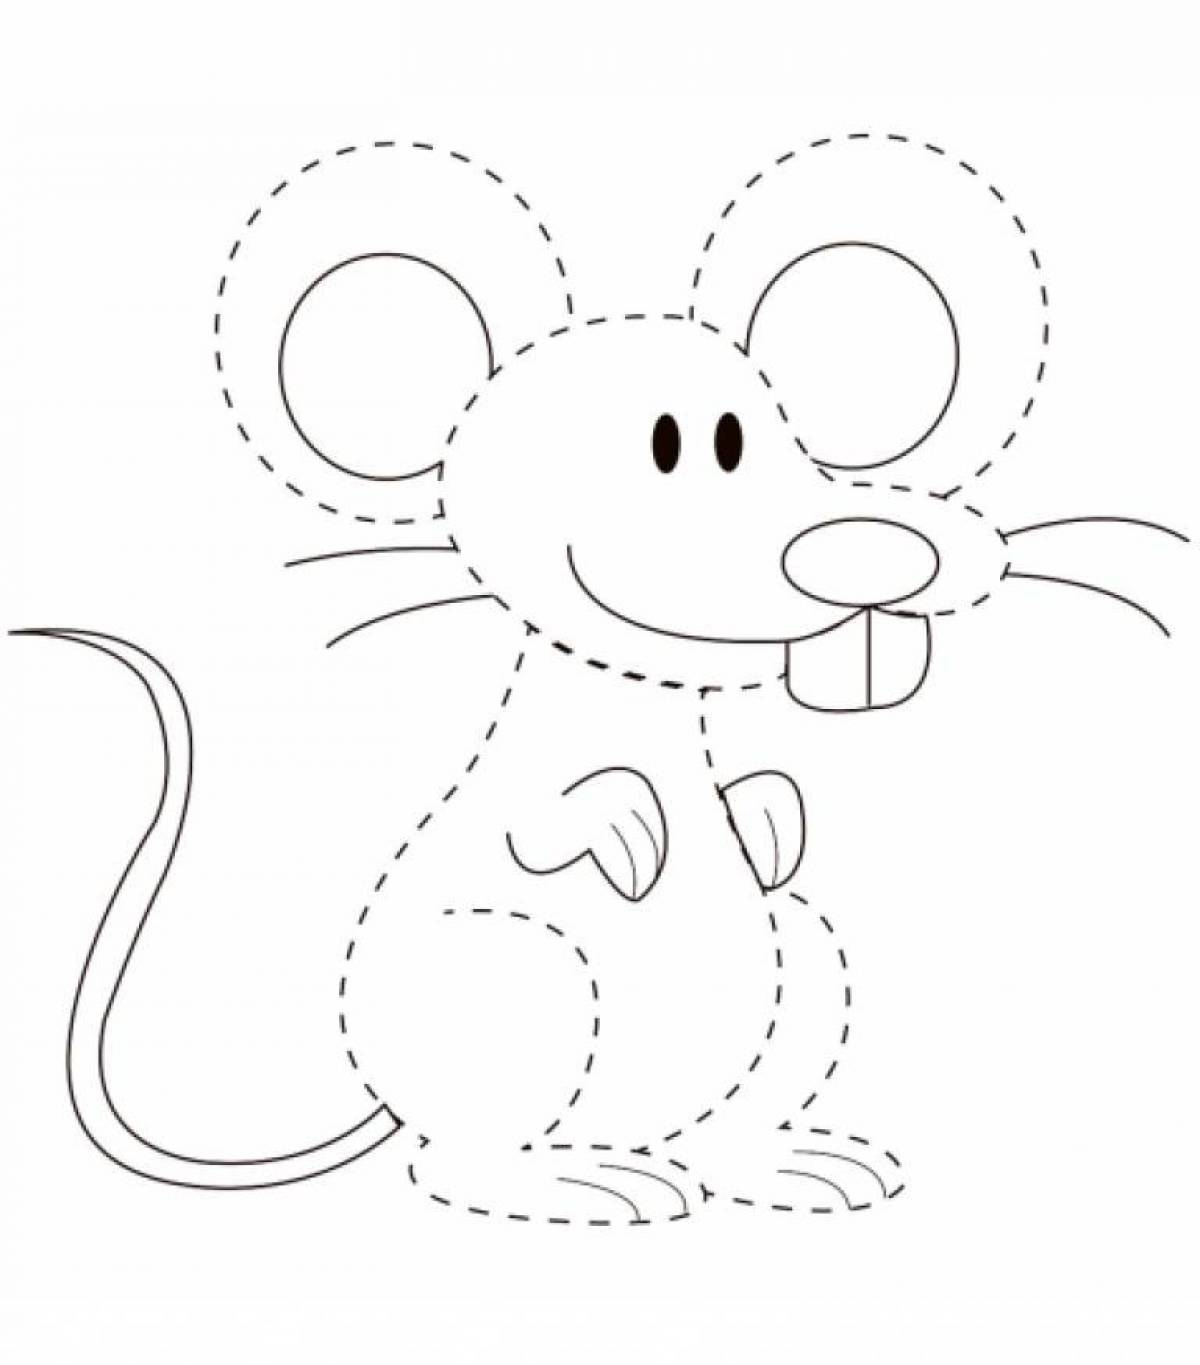 Мышонок раскраска для детей